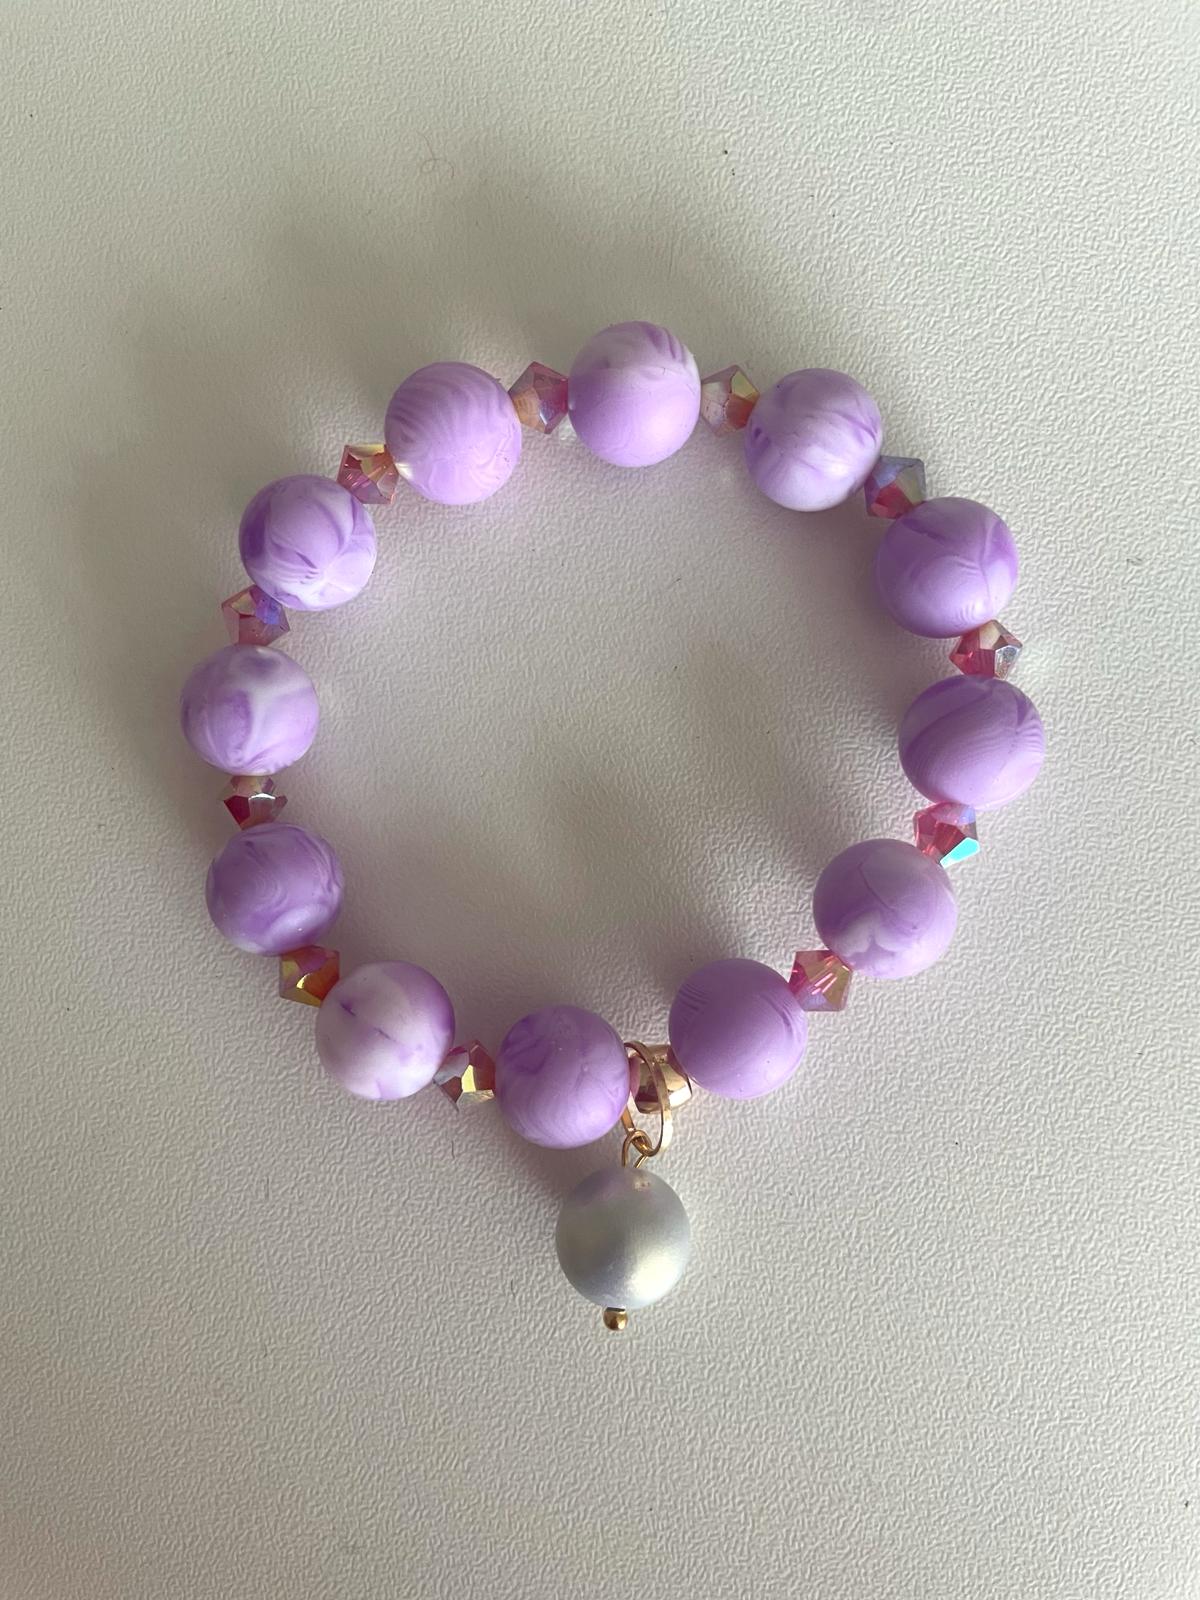 Image of Lavender bracelet by Love Beth